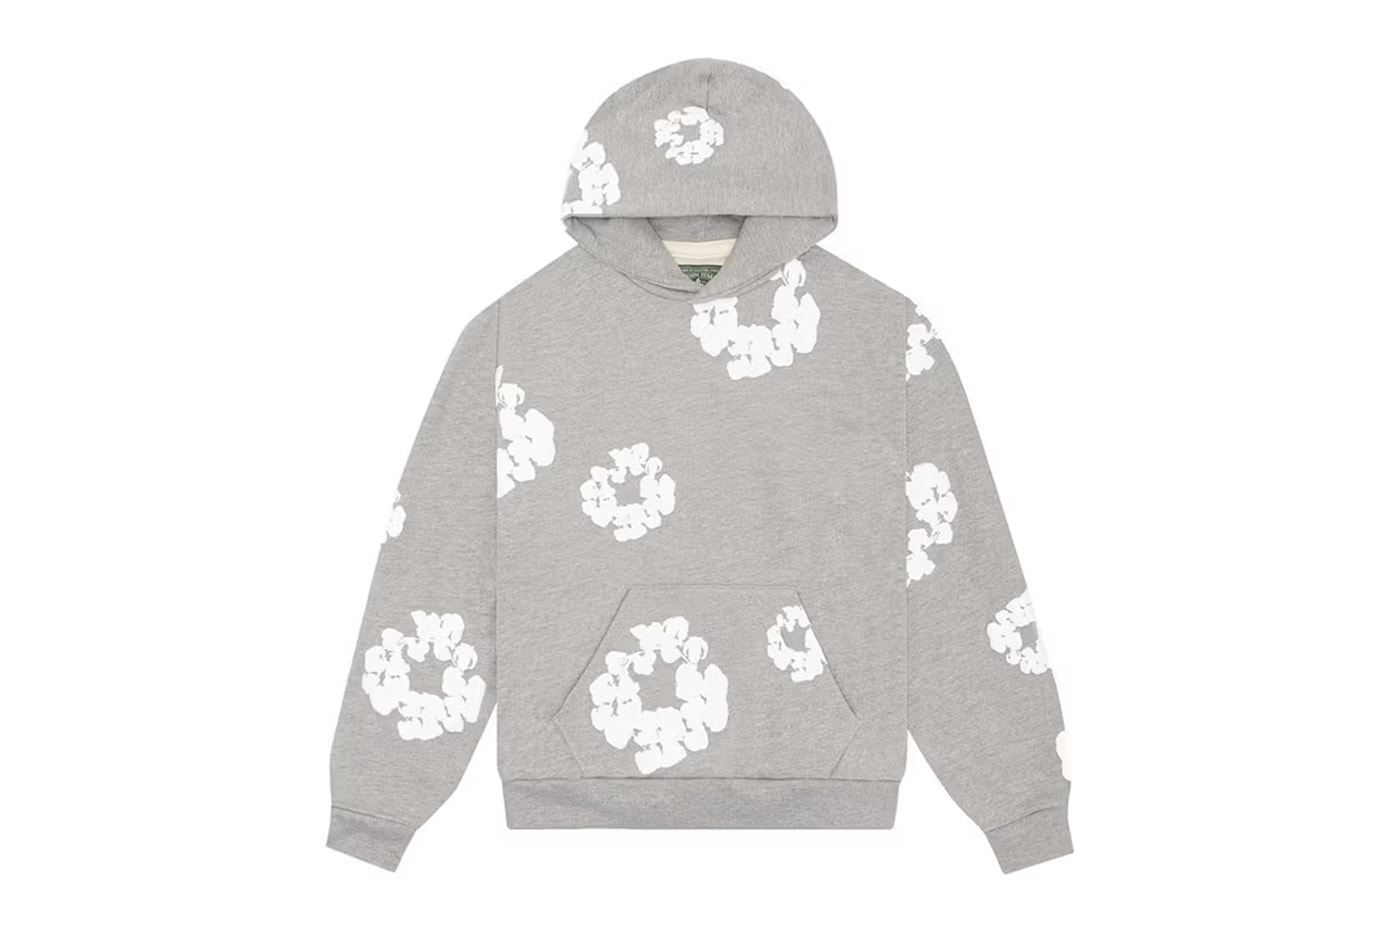 Denim Tears Unveils New "Cotton Wreath" Sweatsuit Capsule NYC LA Pop up shop collection release info address